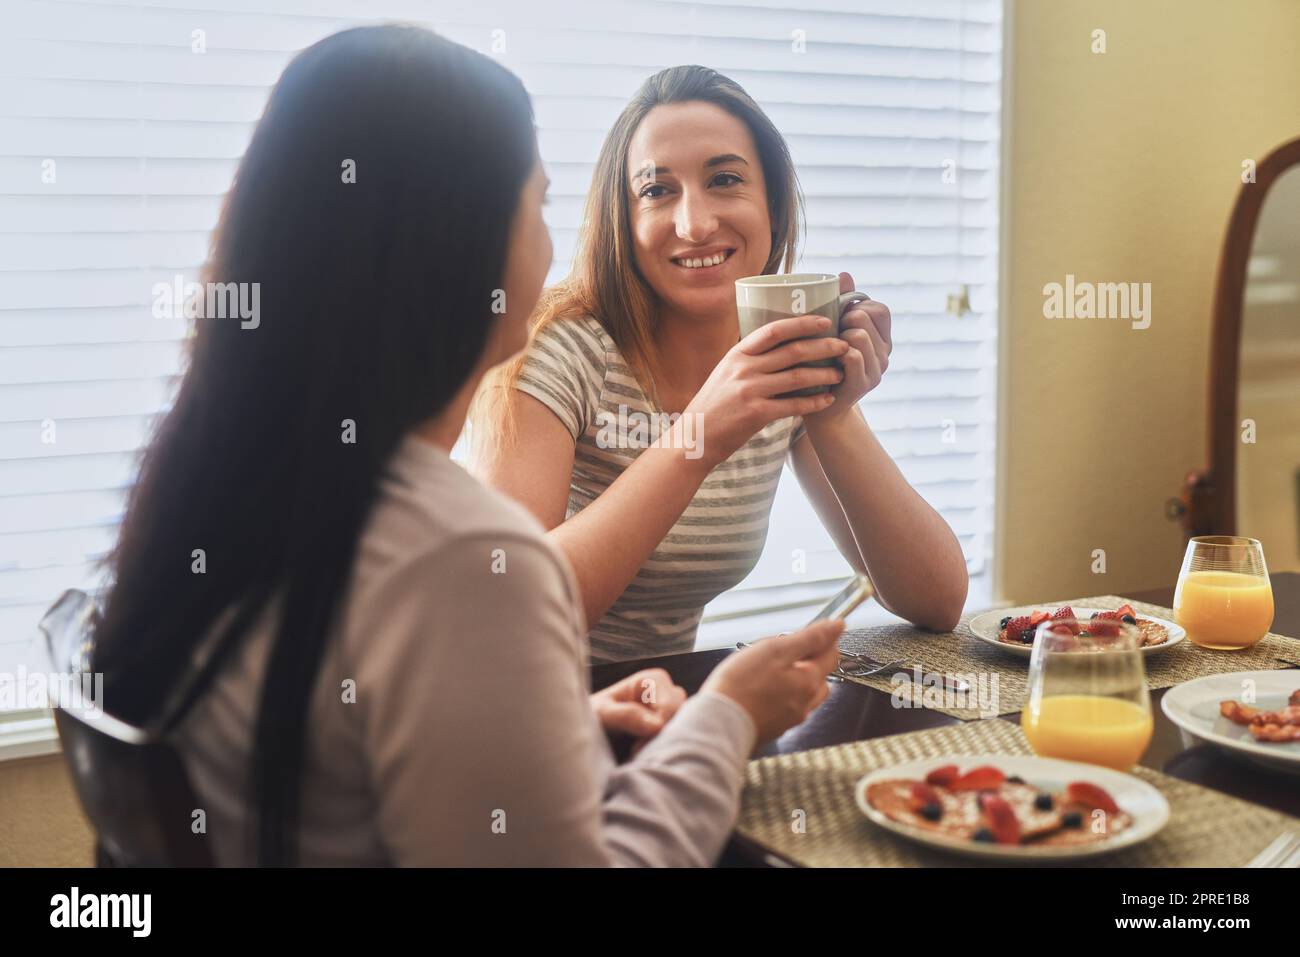 Unsere morgendlichen Gespräche sind die besten. Zwei junge Frauen, die morgens zu Hause frühstücken. Stockfoto